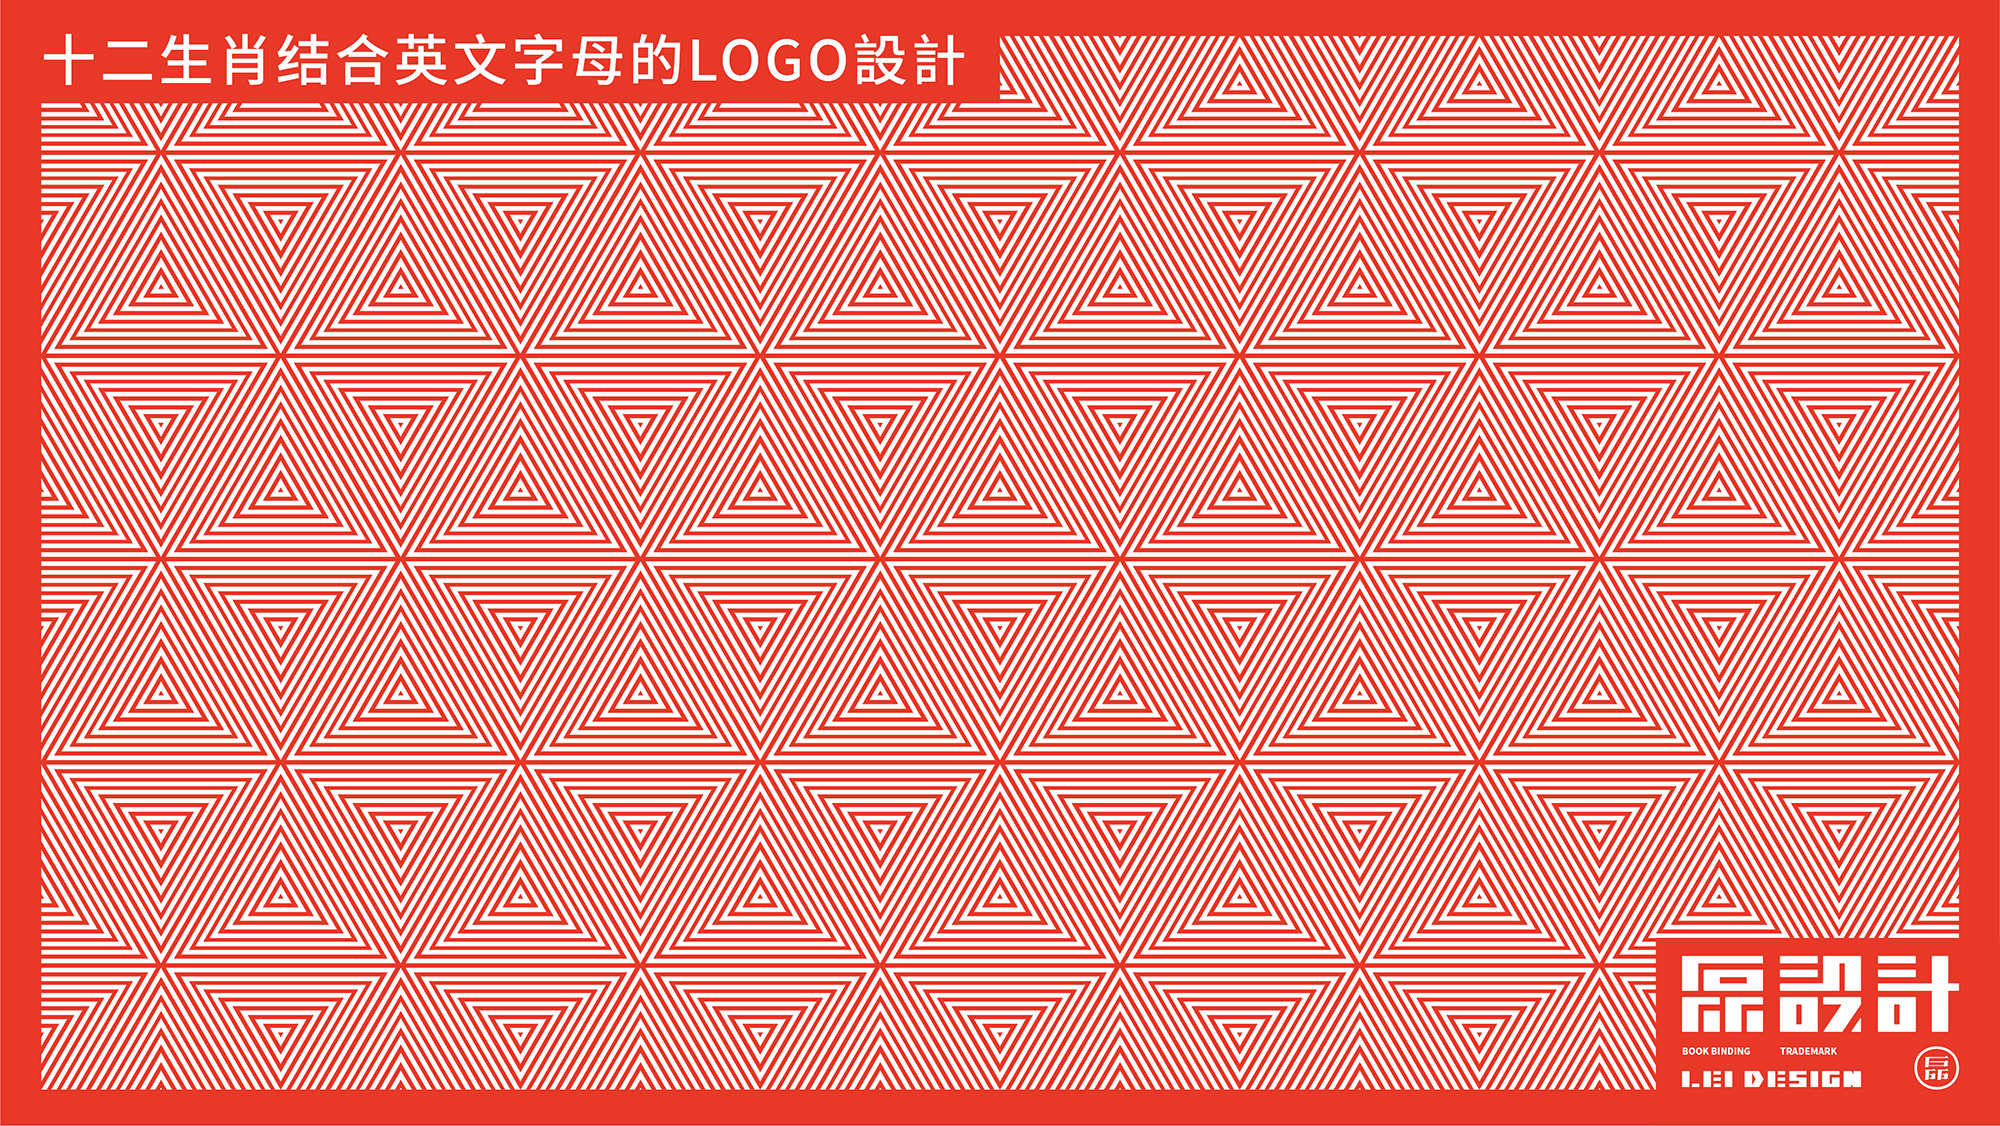 十二生肖结合英文字母的LOGO設計